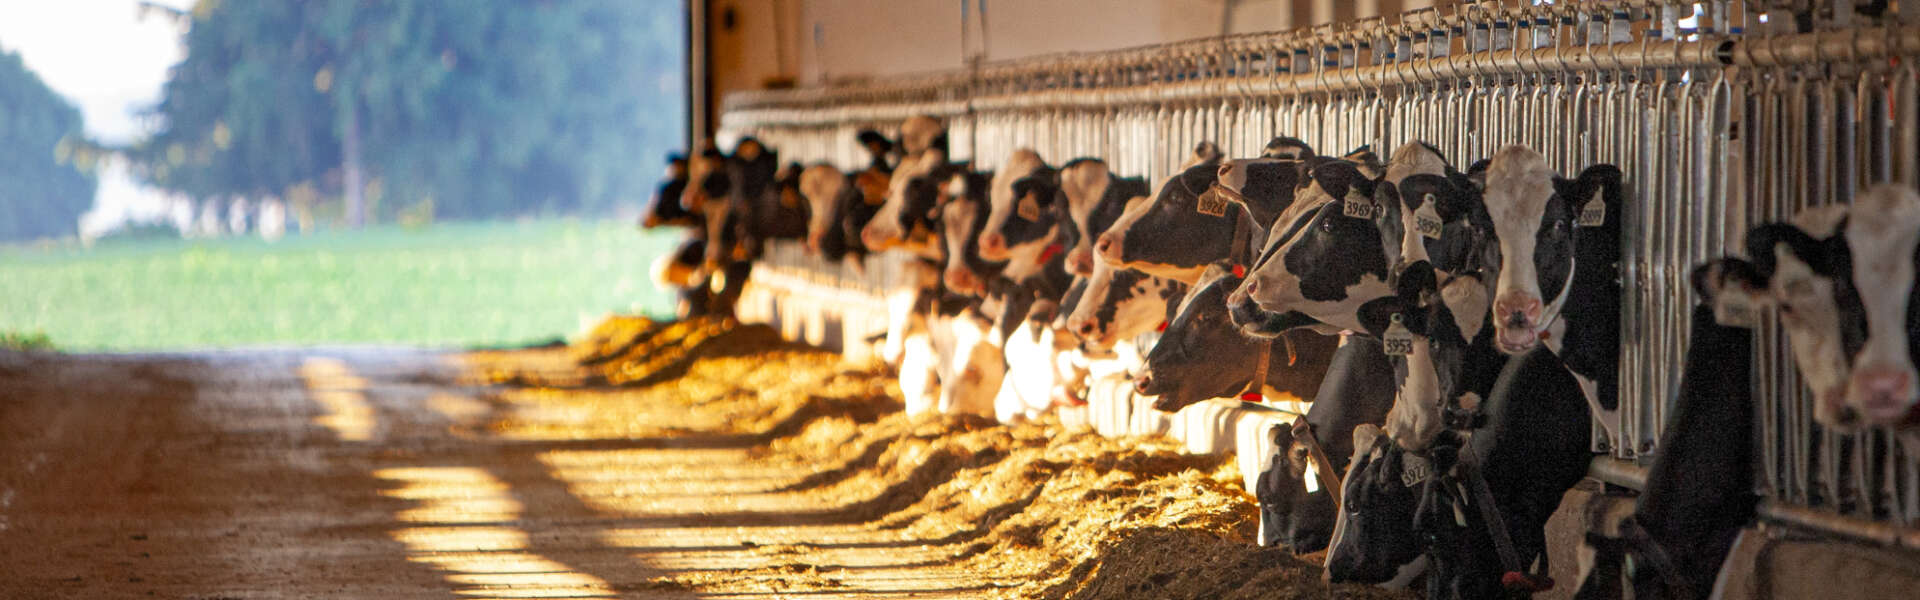 Several dozen cows eat hay through grates inside a barn